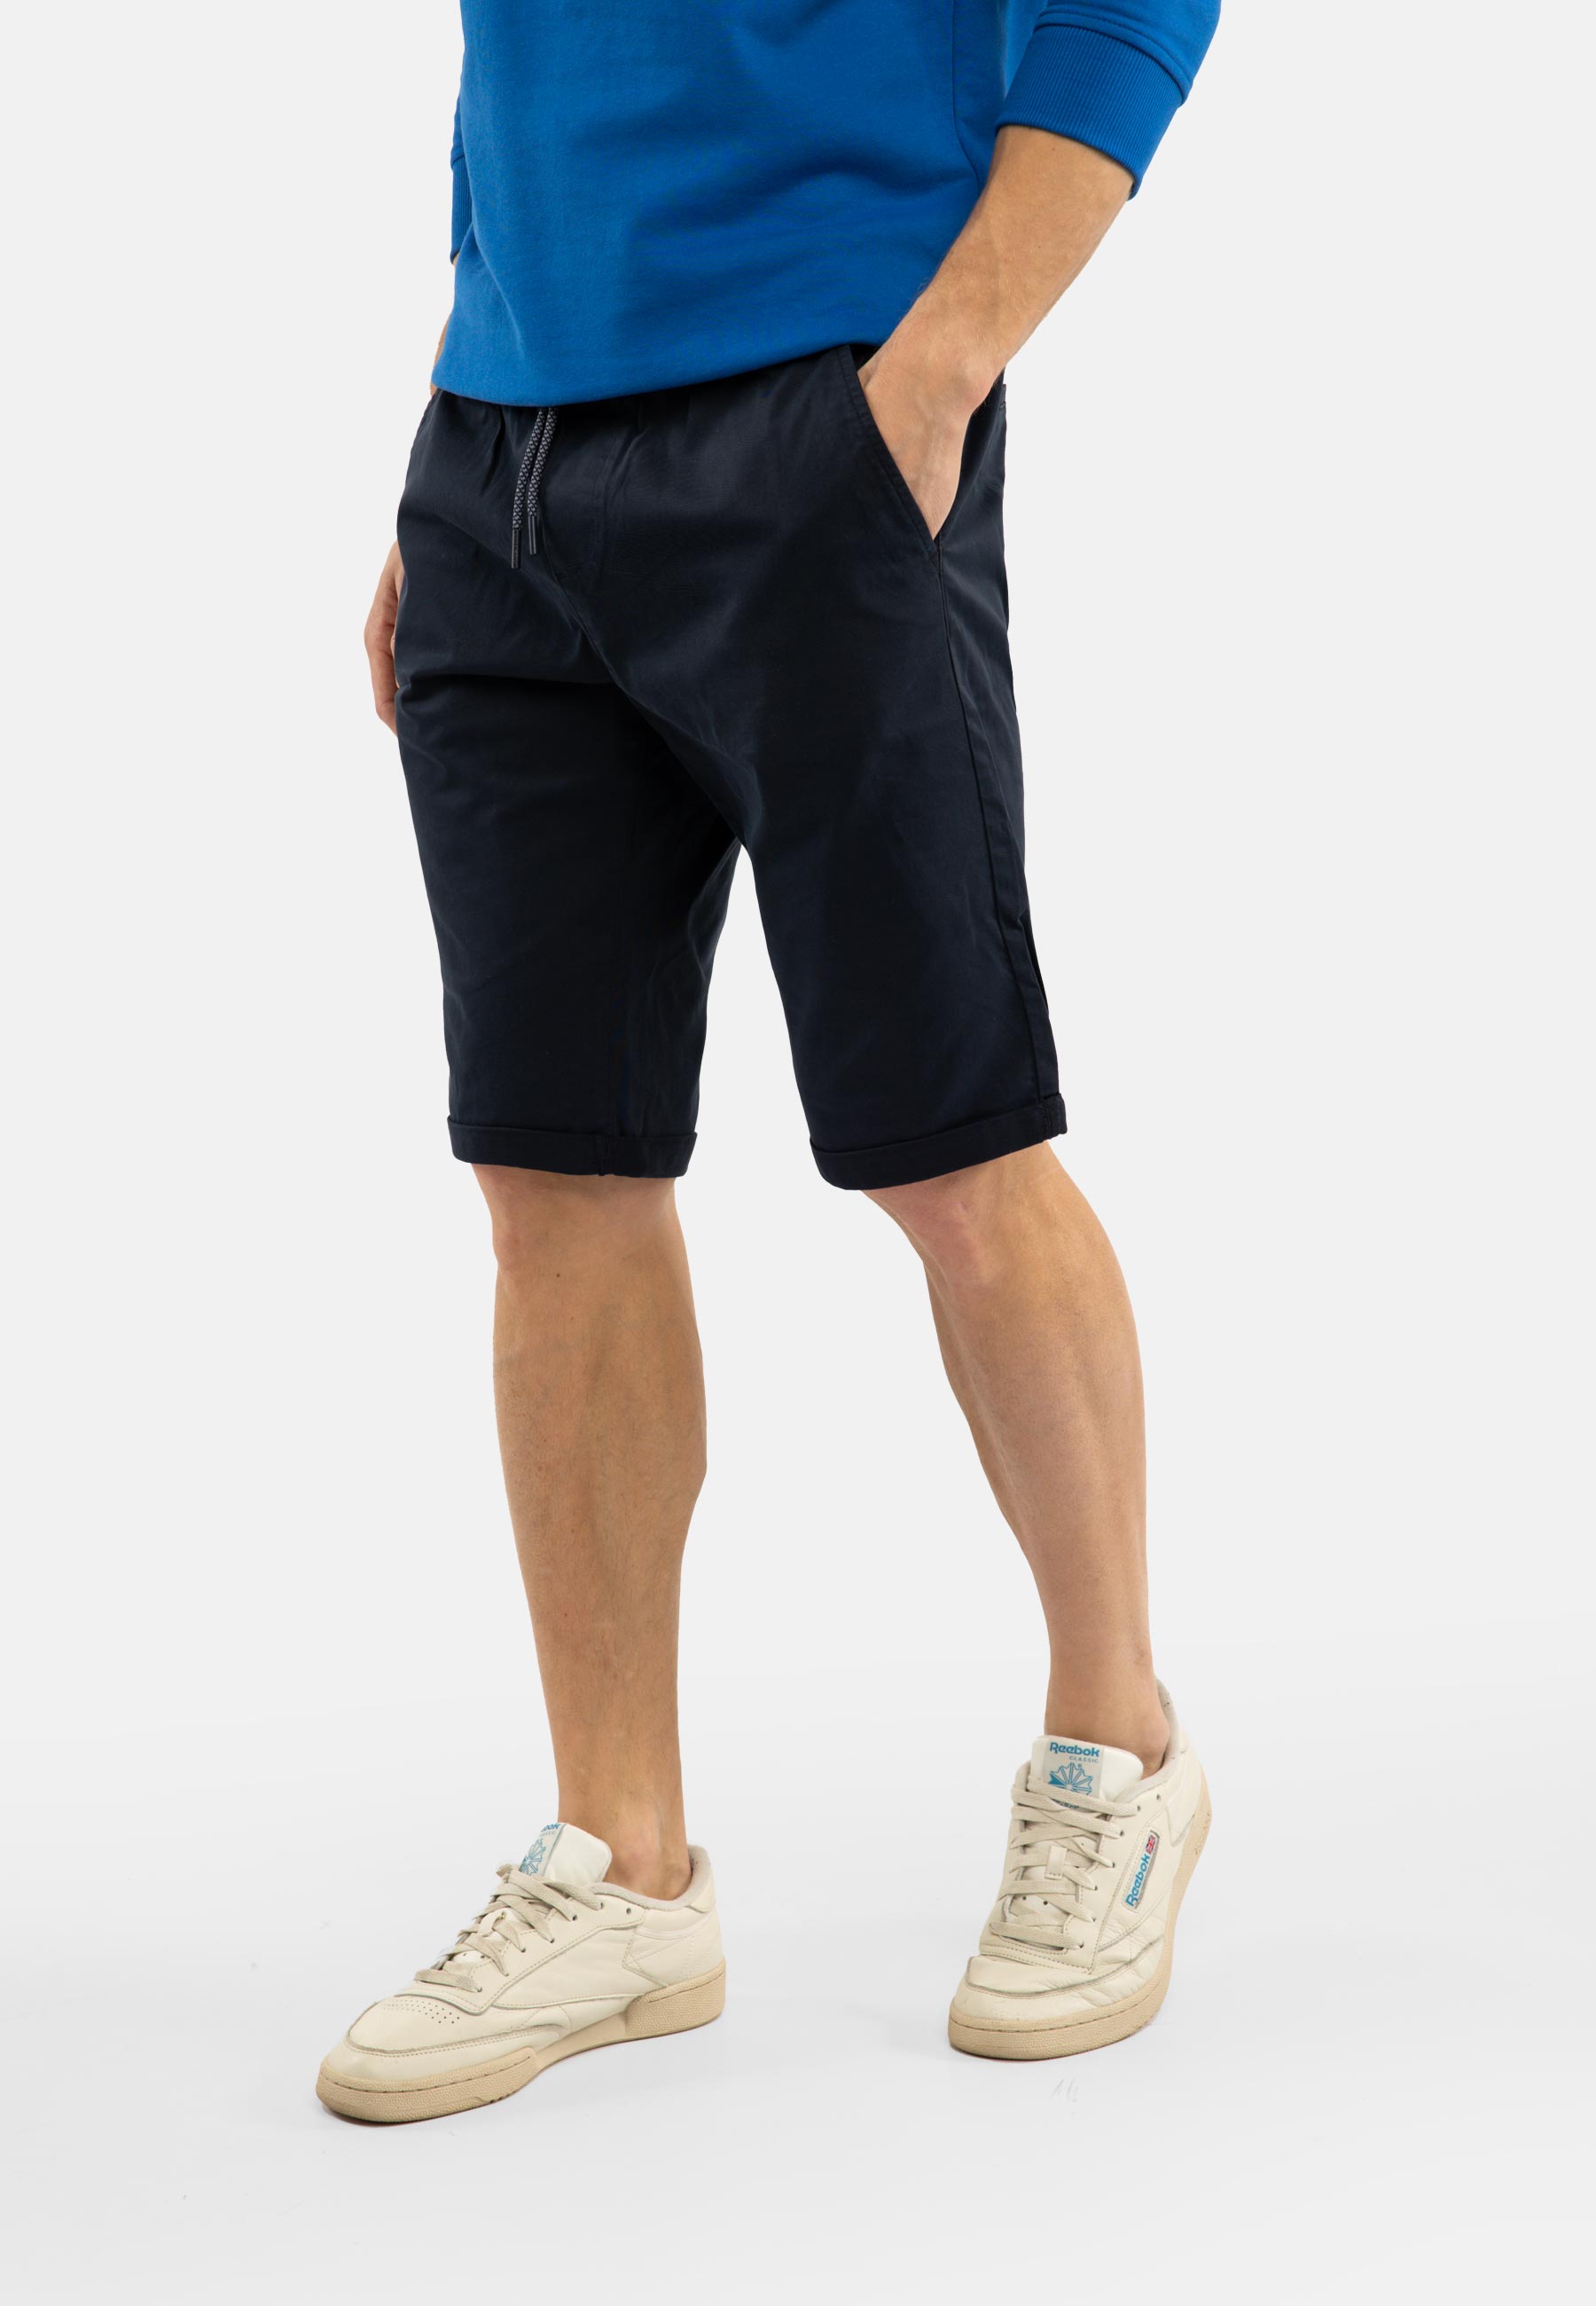 Volcano Man's Shorts P-CORN Navy Blue